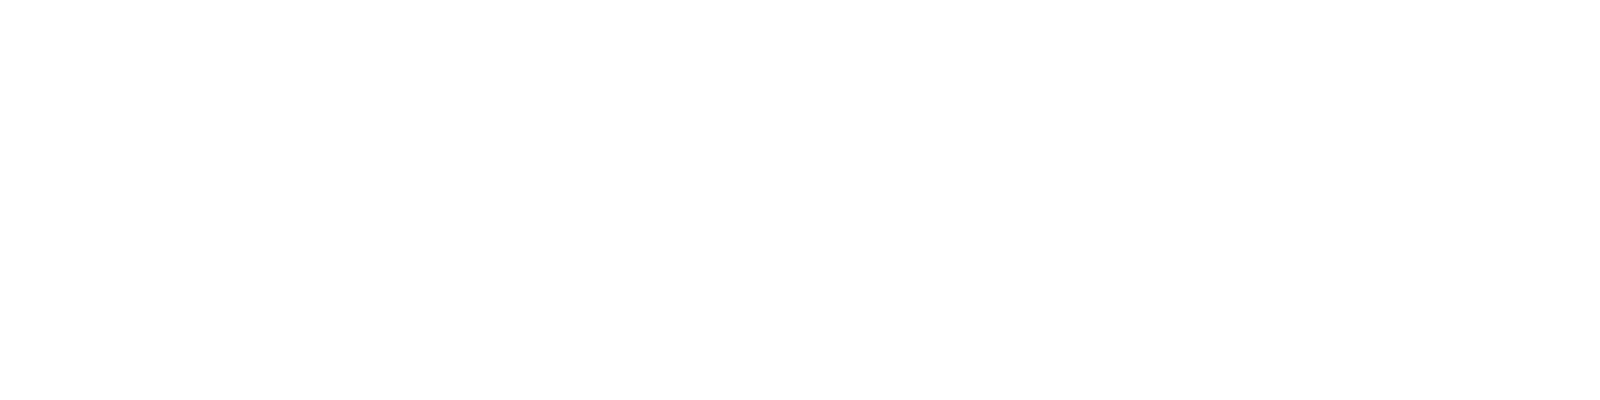 DesignTechX